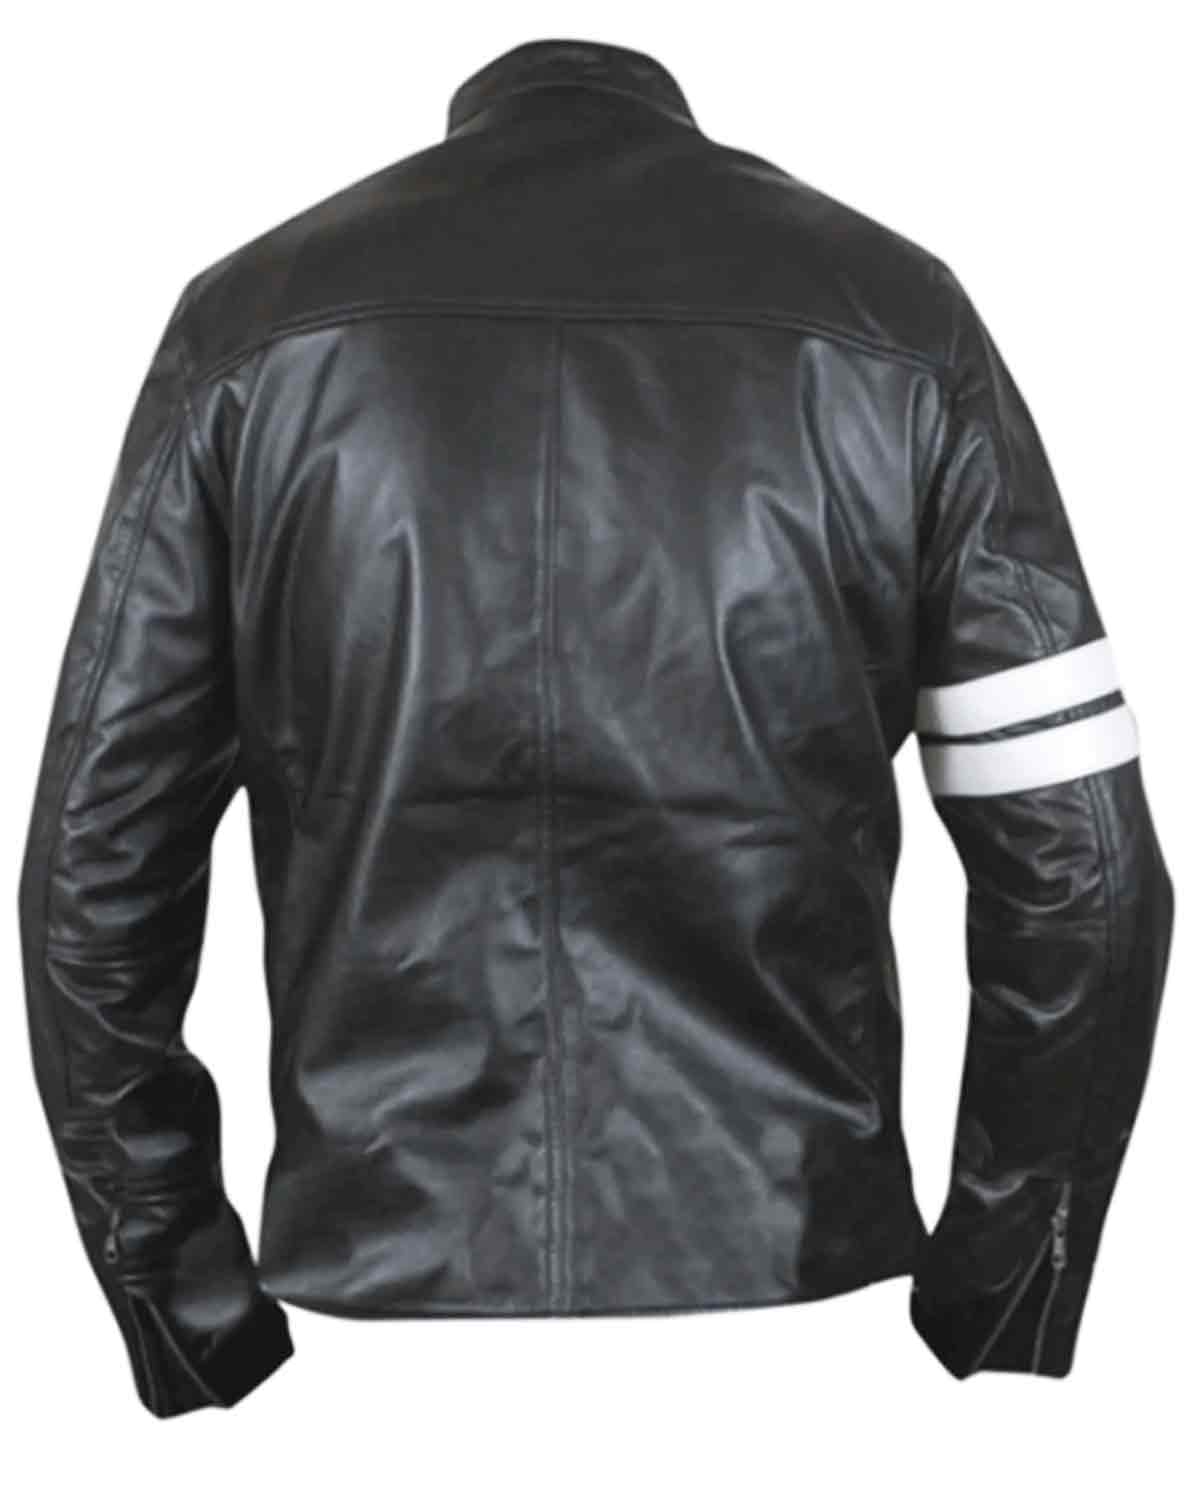 Elite John Tanner Driver San Francisco Black Biker Leather Jacket